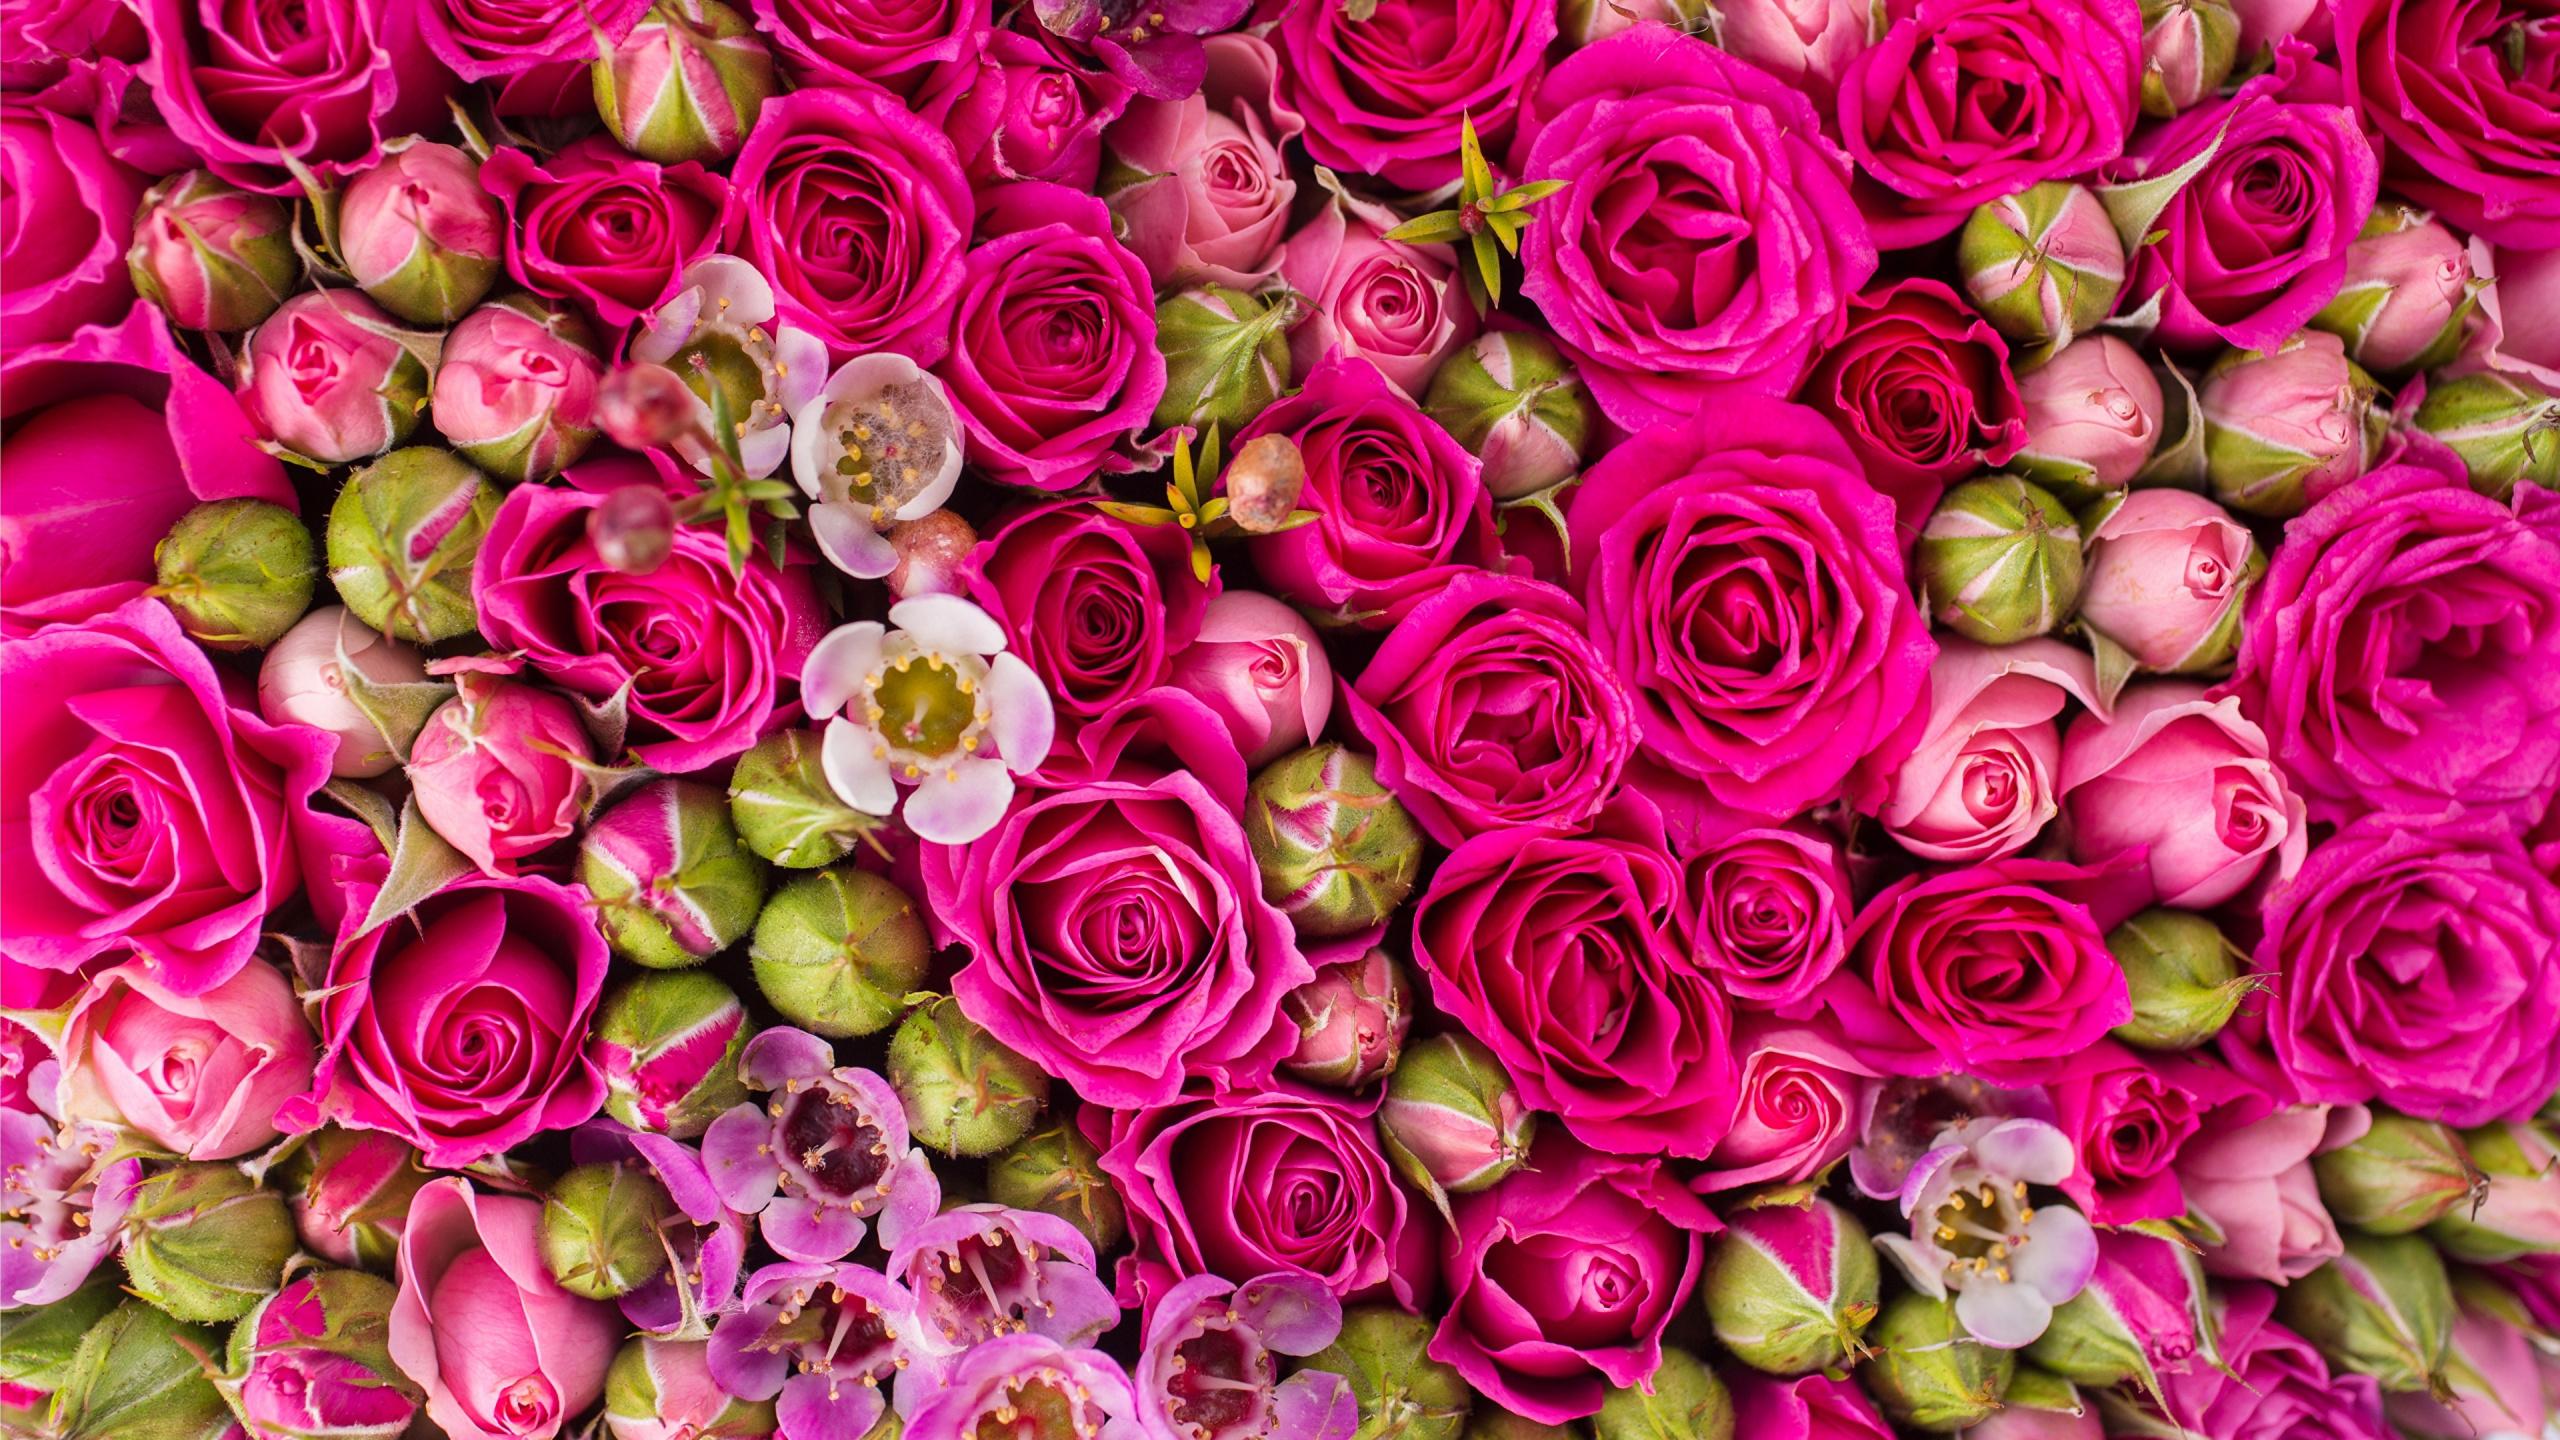 玫瑰花园, 显花植物, 粉红色, 玫瑰家庭, 花艺 壁纸 2560x1440 允许